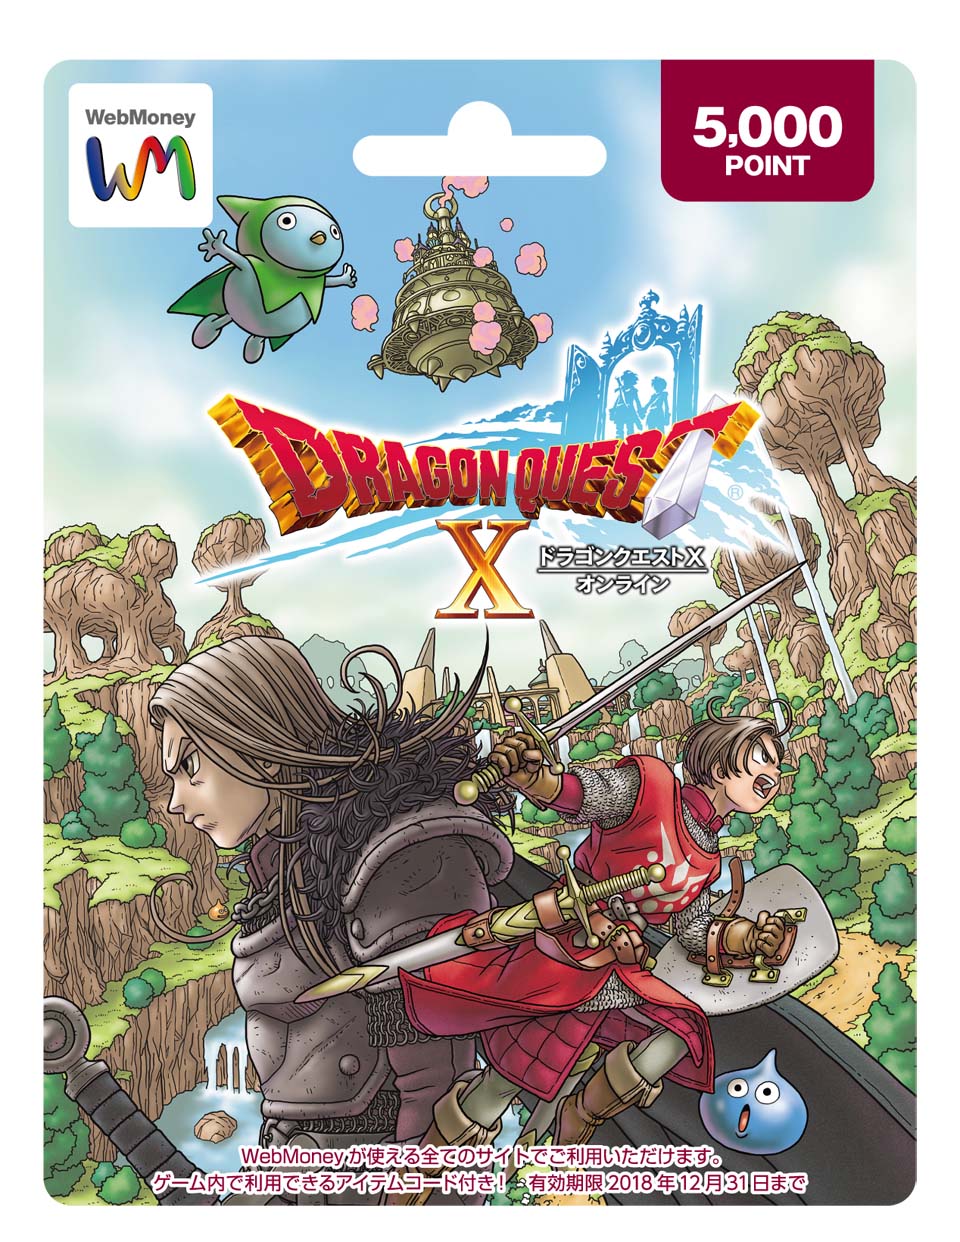 「ドラゴンクエストX」ふくびき券30枚つきのWebMoneyギフトカードが11月1日よりローソンで販売の画像